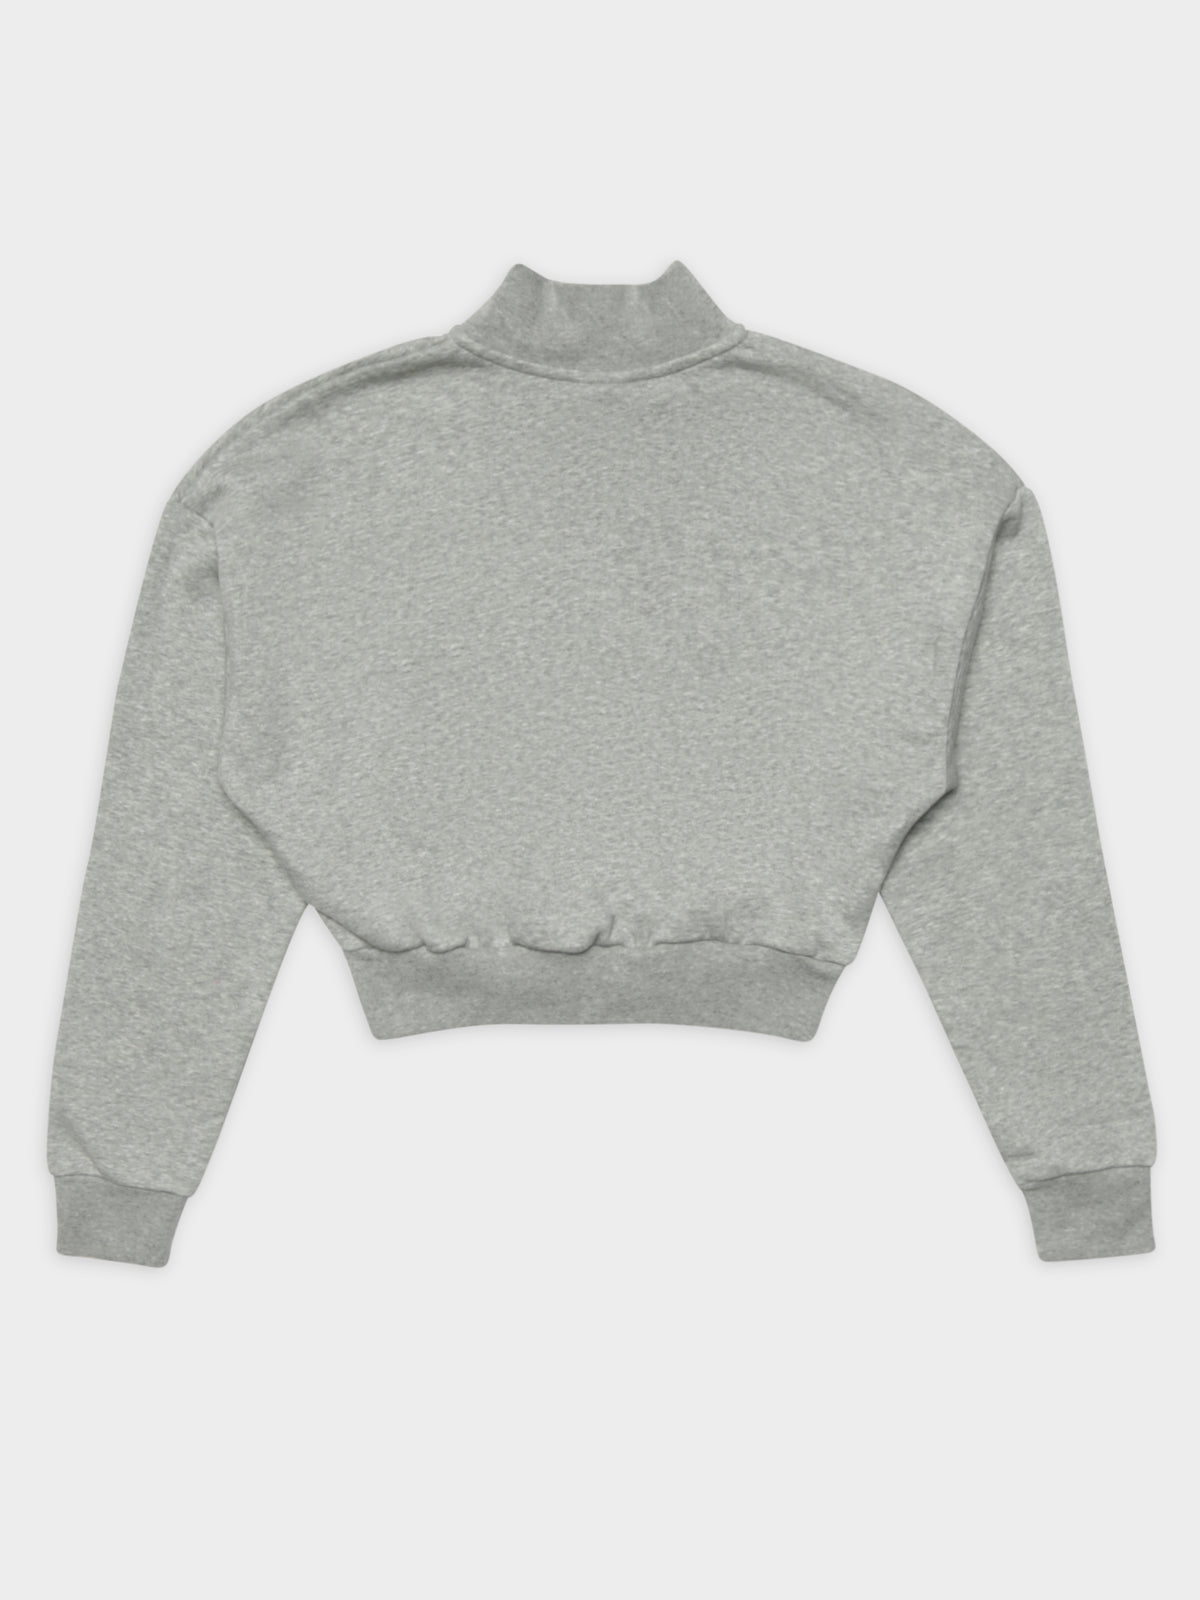 Sportswear Essential Fleece Long Sleeve Crop Top in Grey